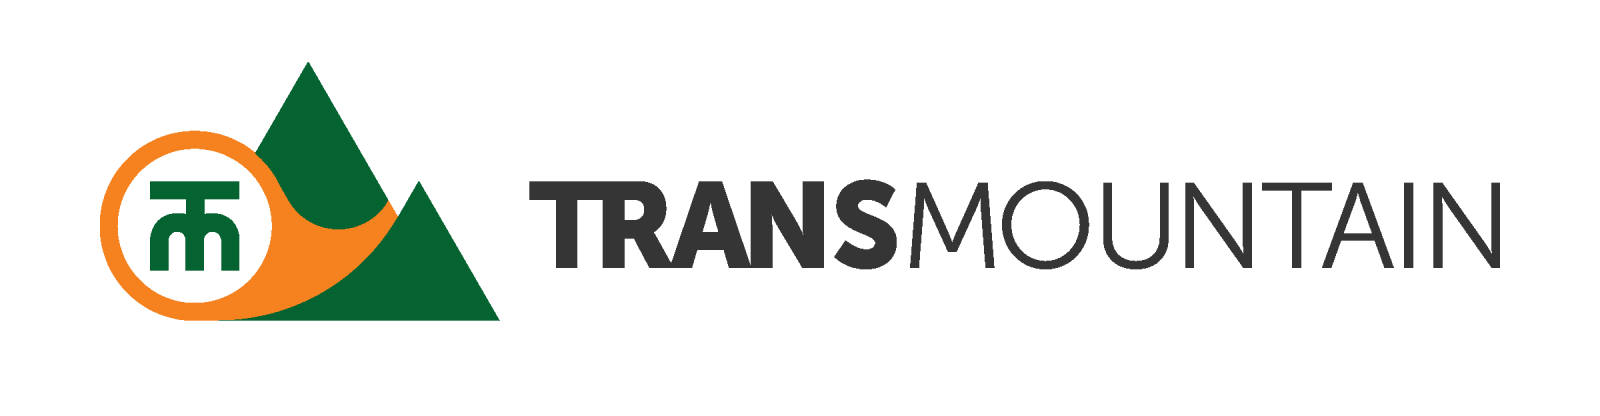 TransMountain